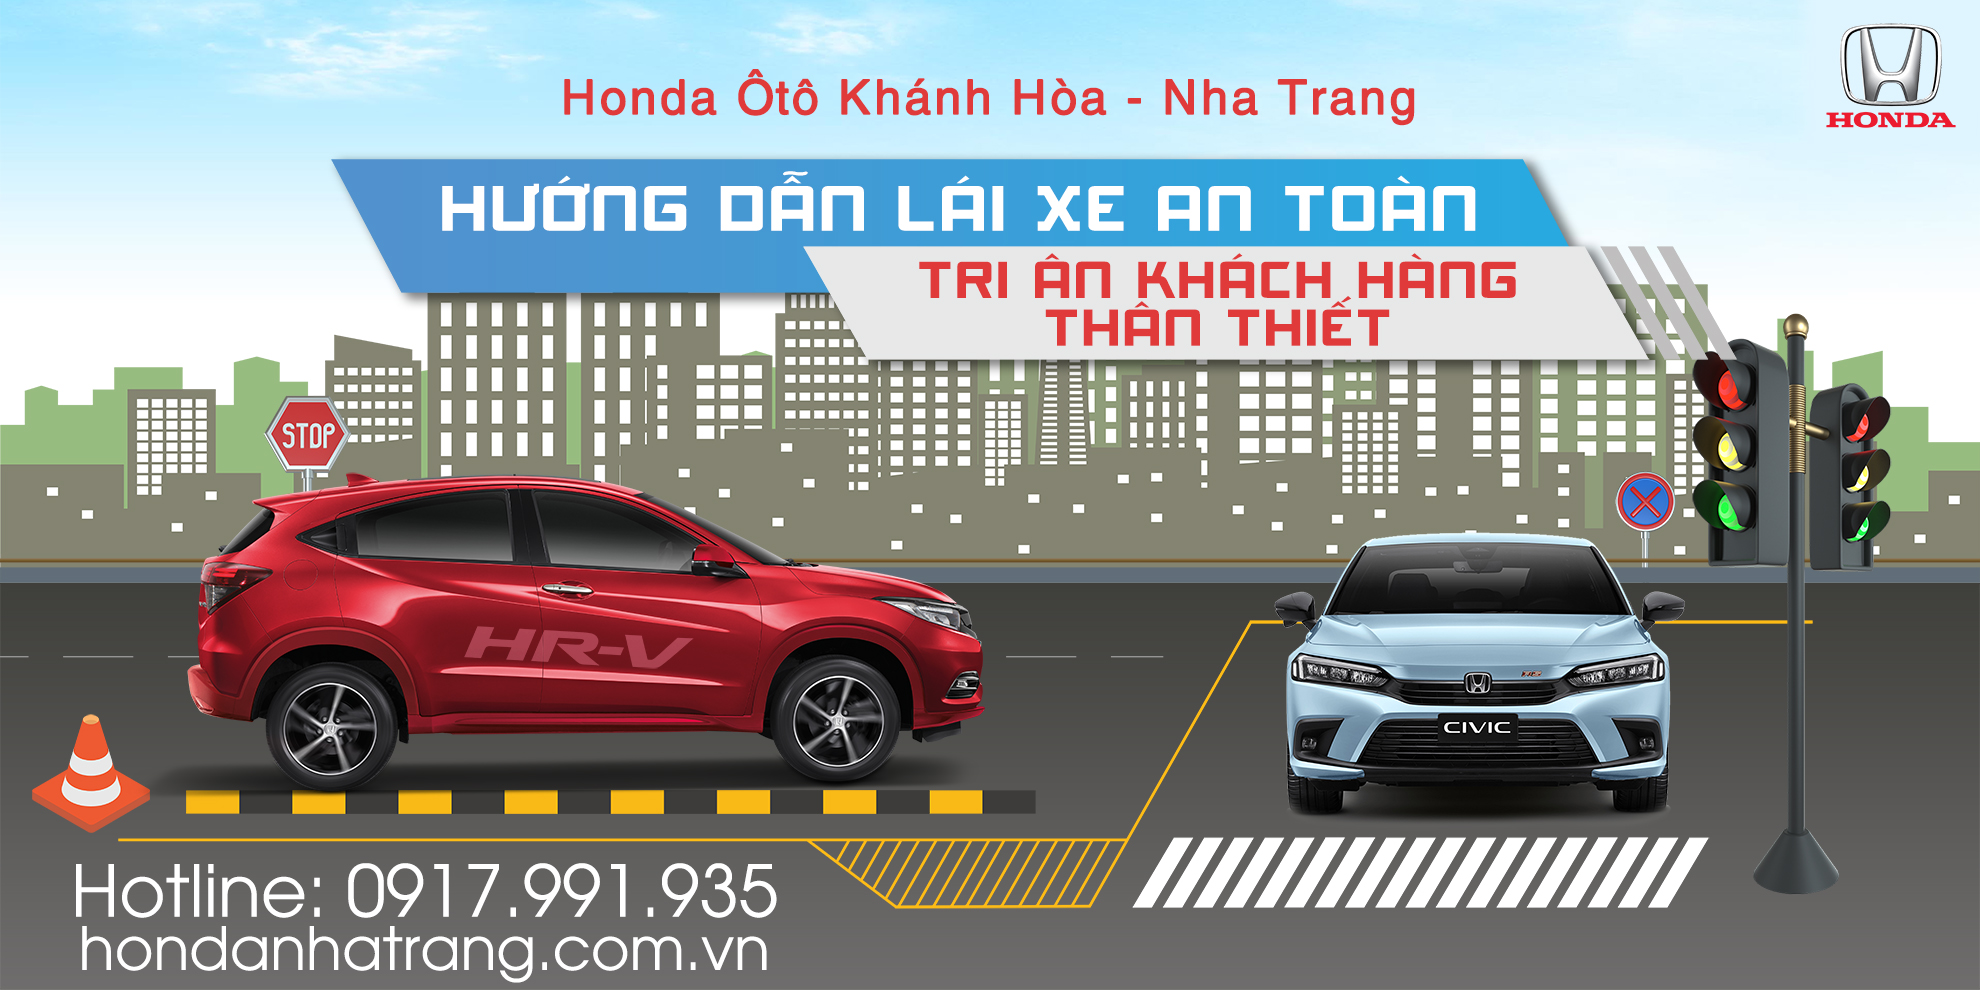 Chương trình Lái xe an toàn cùng Honda Ôtô Khánh Hoà – Nha Trang